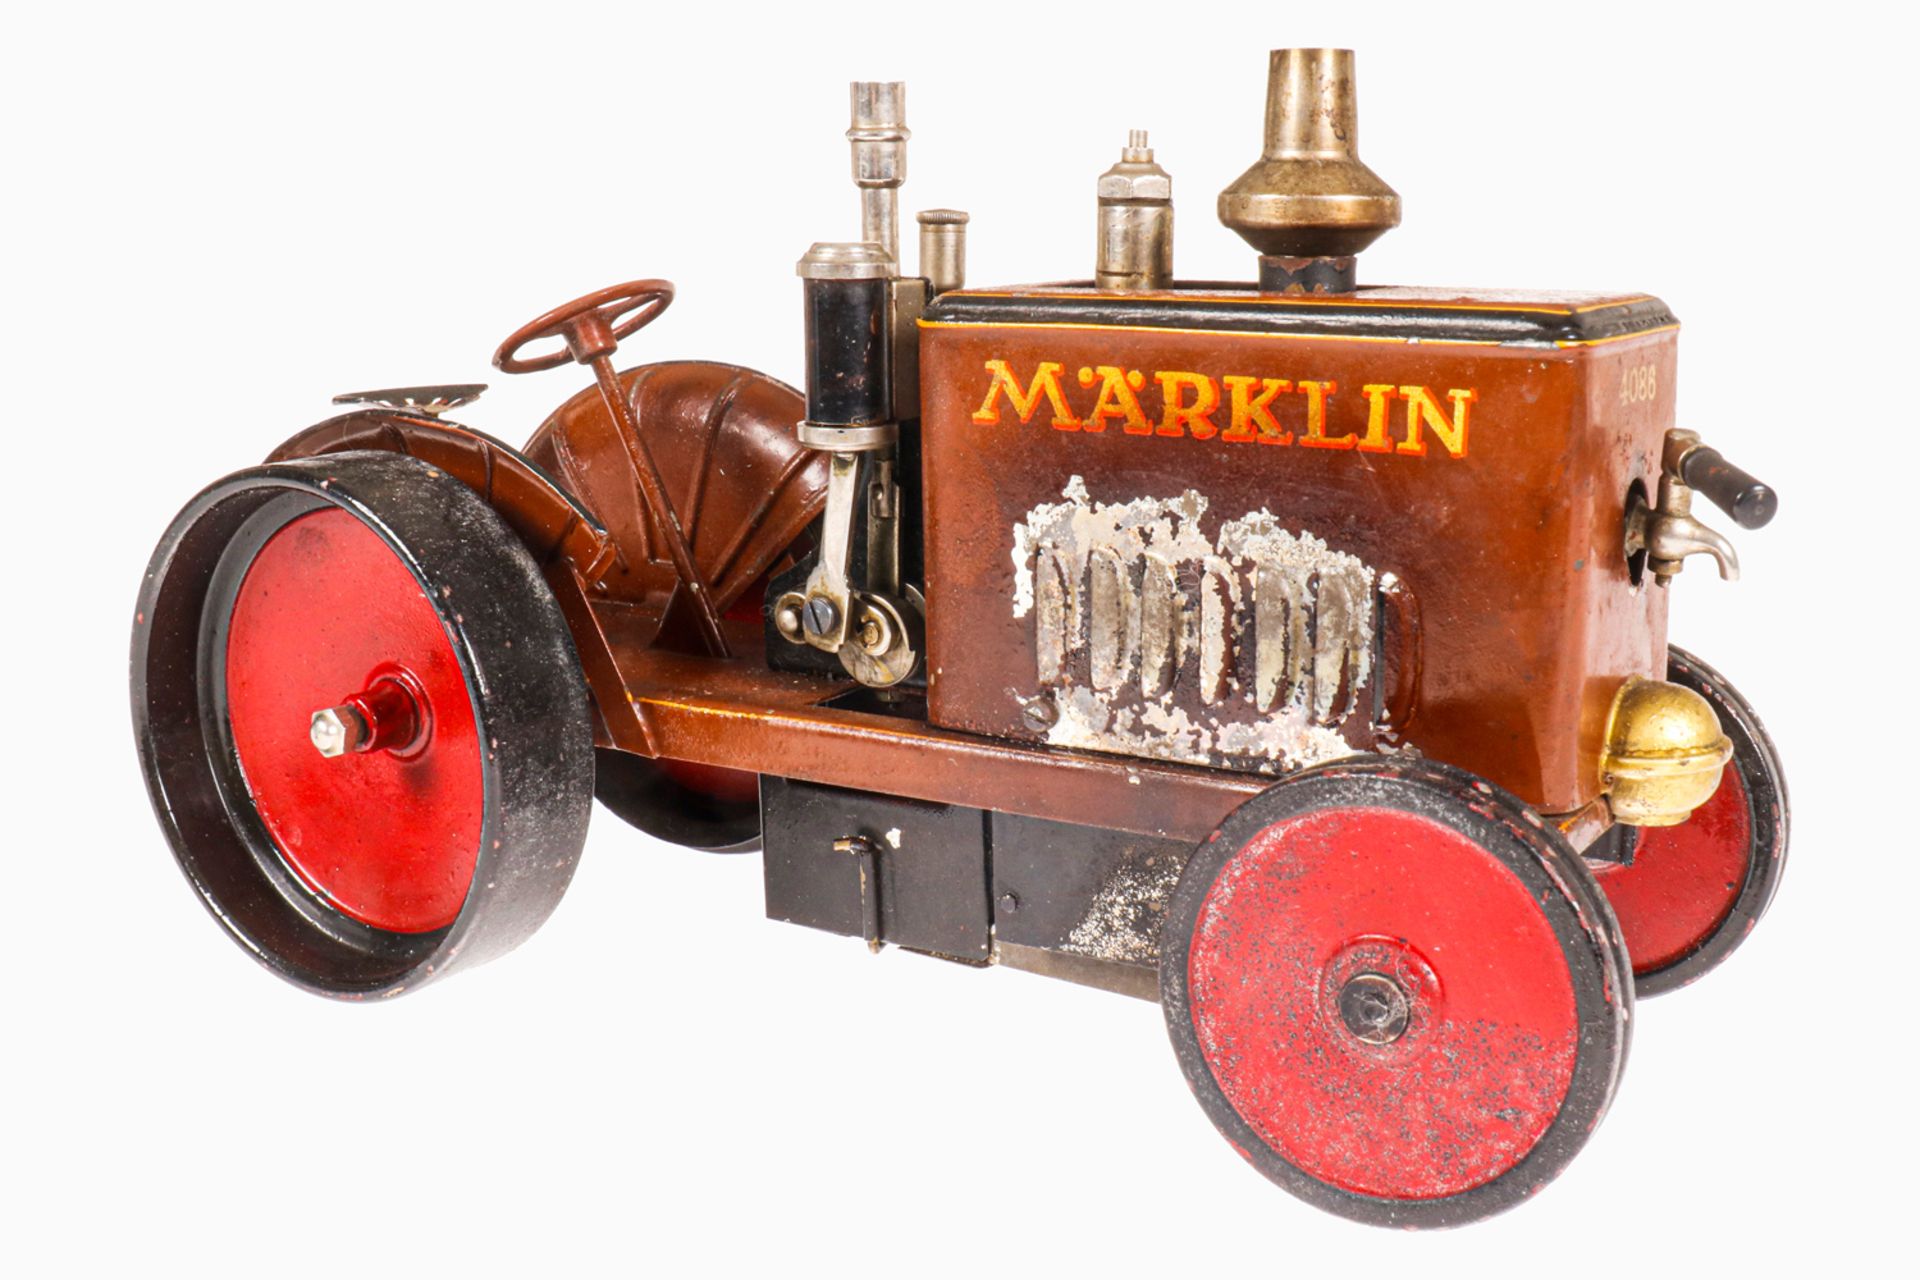 Märklin Dampftraktor 4086, spiritusbetrieben, handlackiert, mit Brenner und Armaturen, seitlich - Image 6 of 6